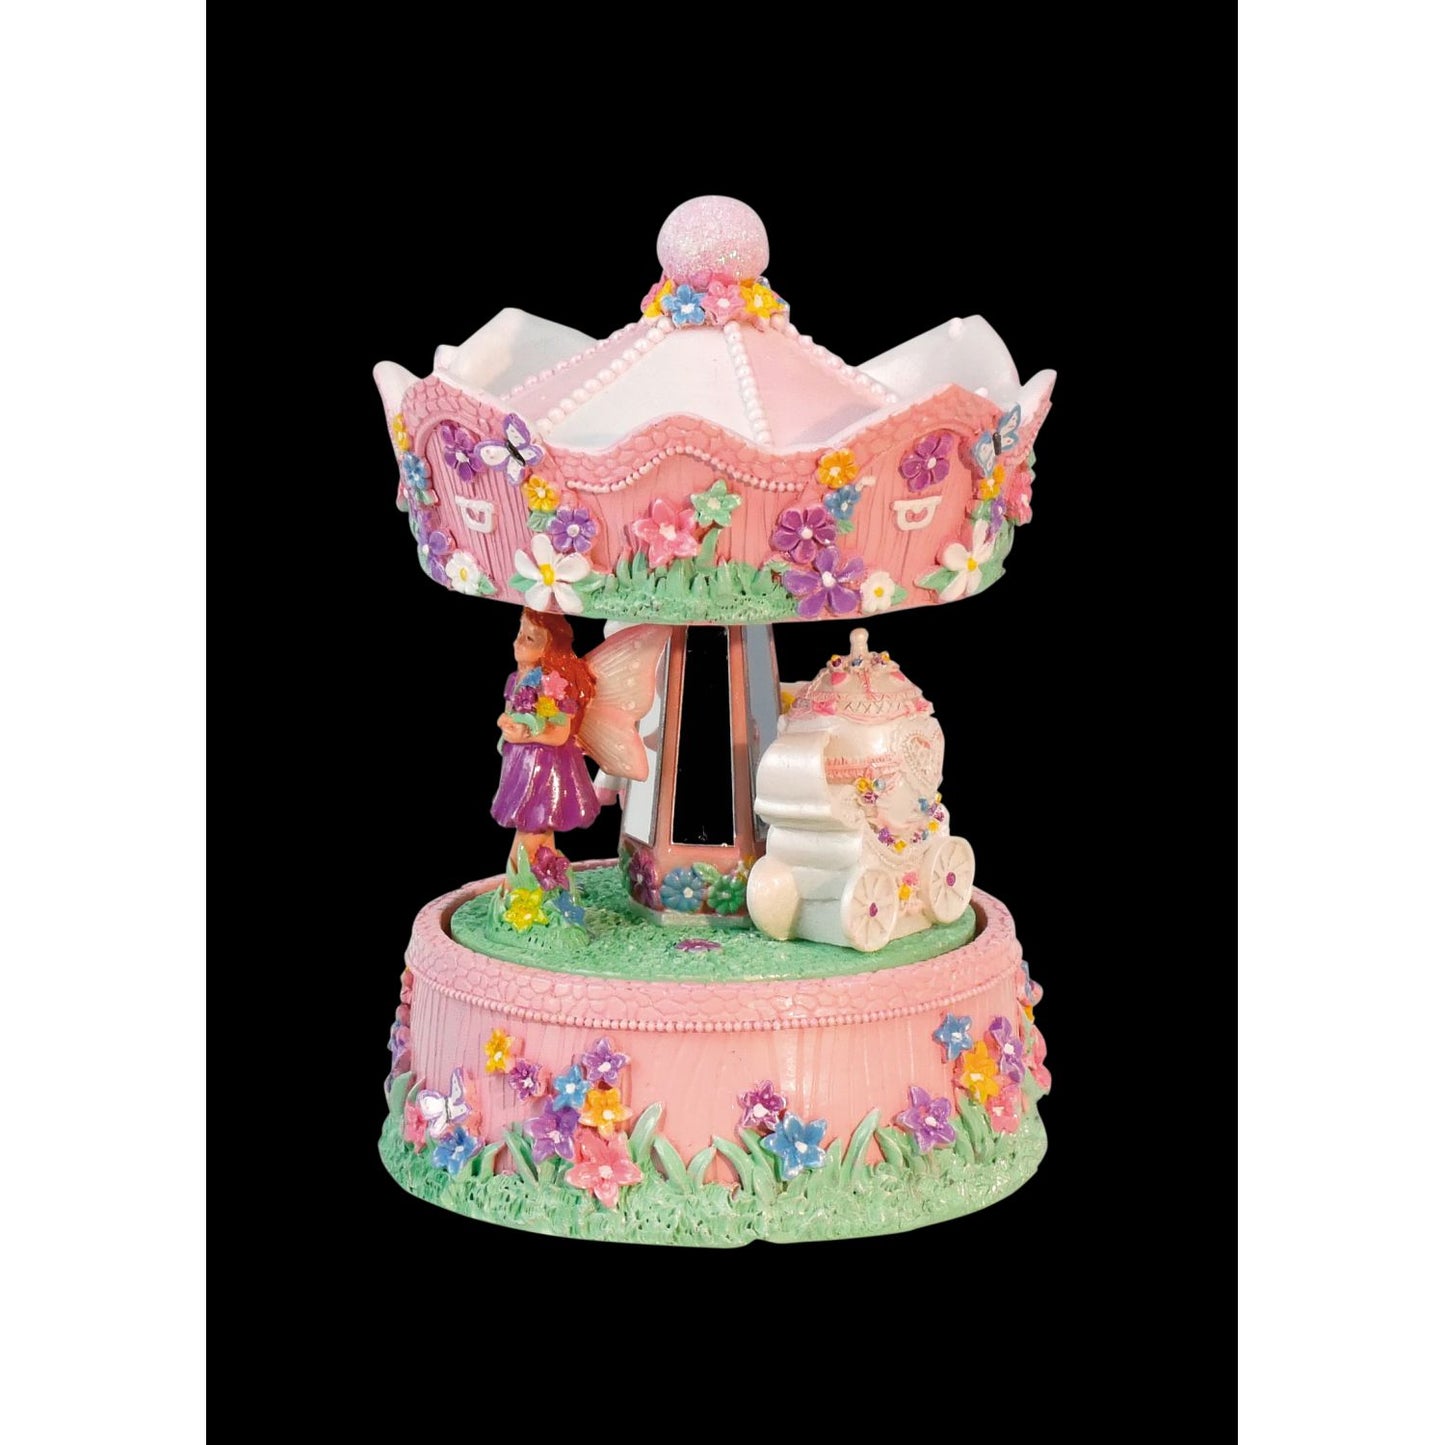 Musicbox Kingdom 6.3" Music Box “Fairy Carousel”